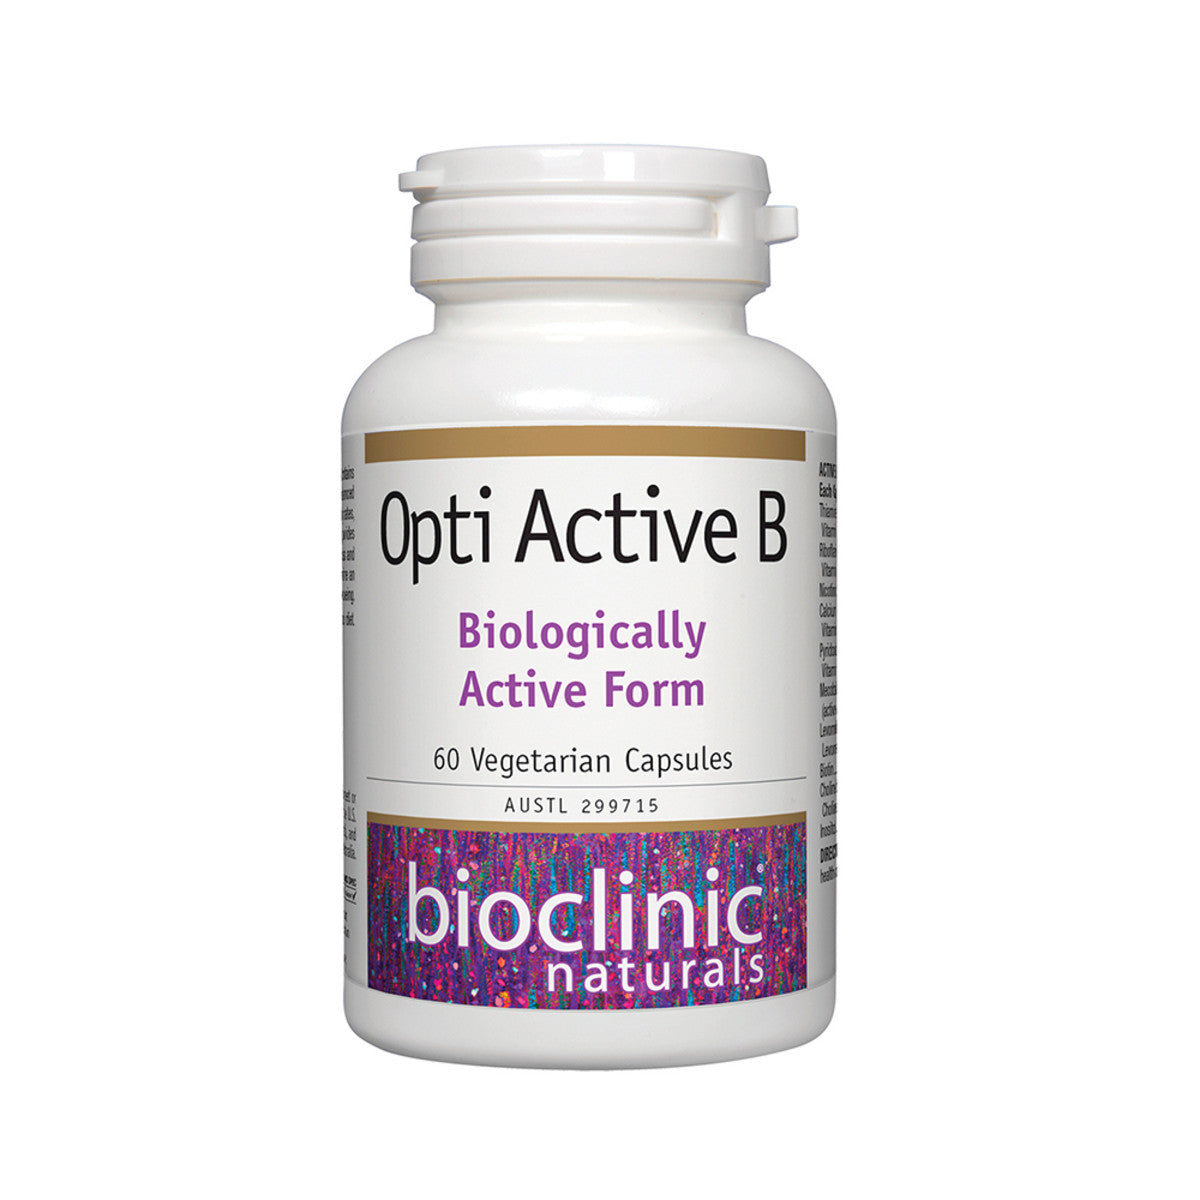 Bioclinic Naturals - Opti Active B